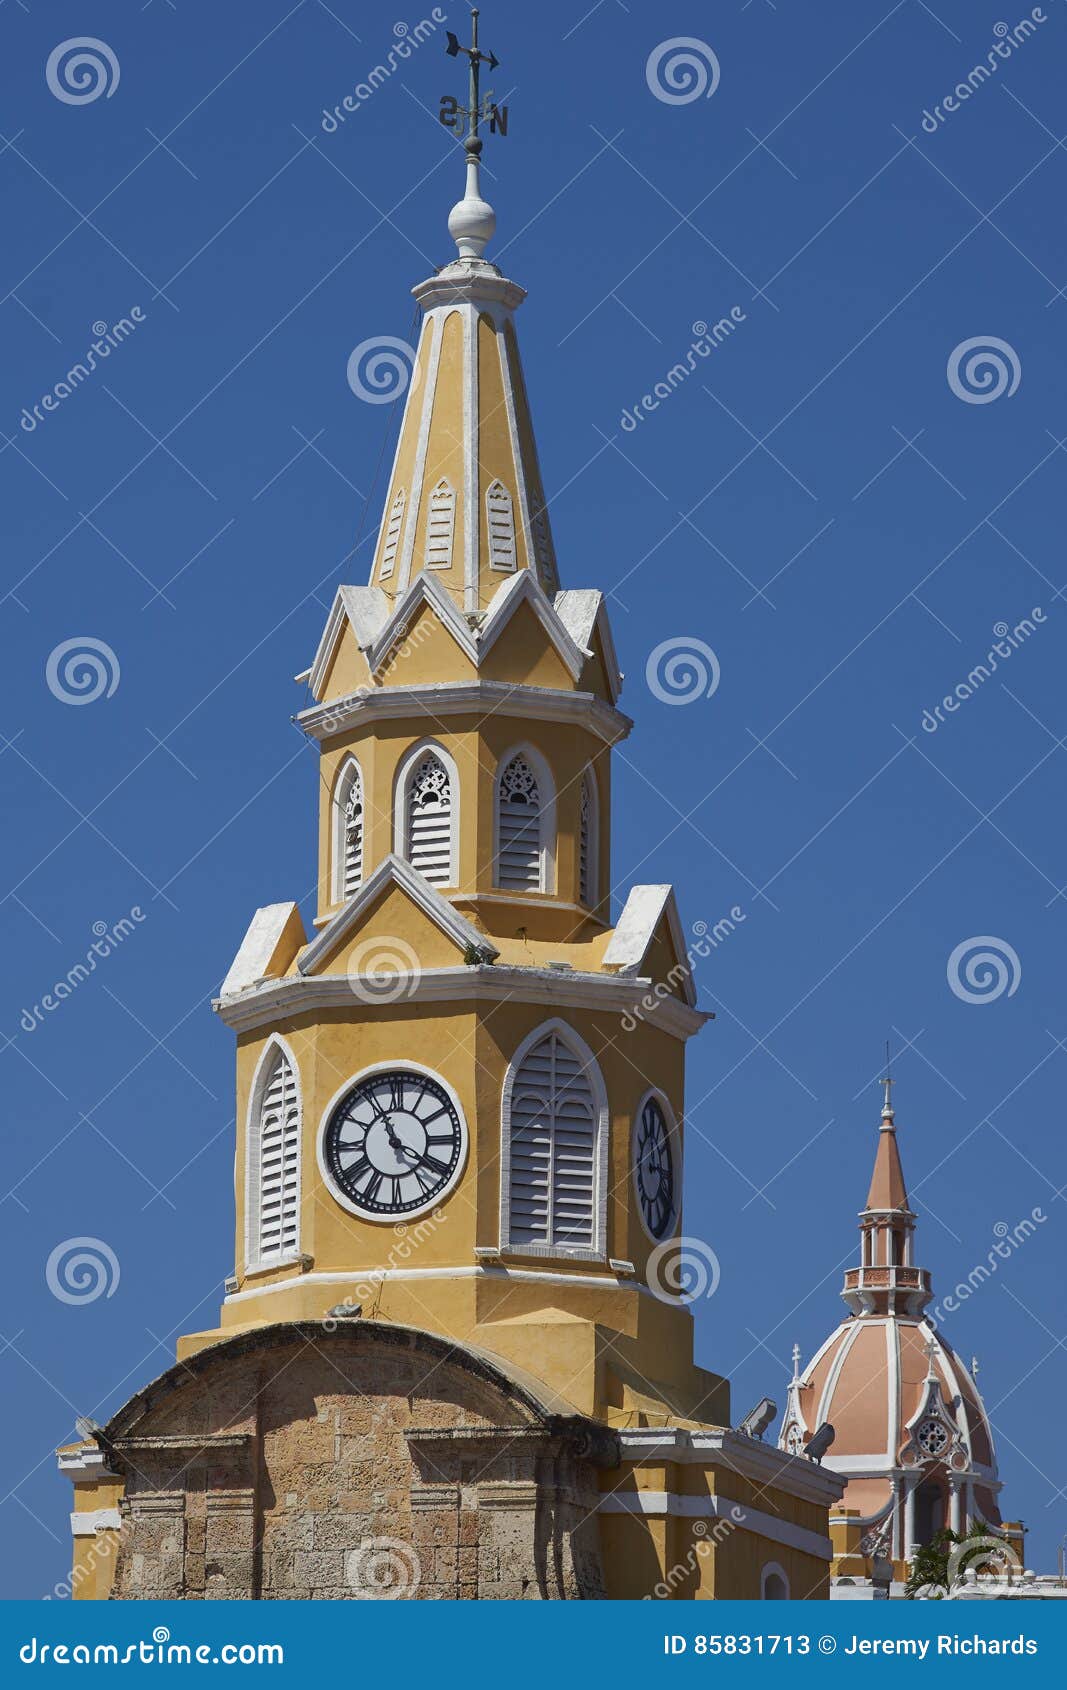 torre del reloj in cartagena de indias, colombia